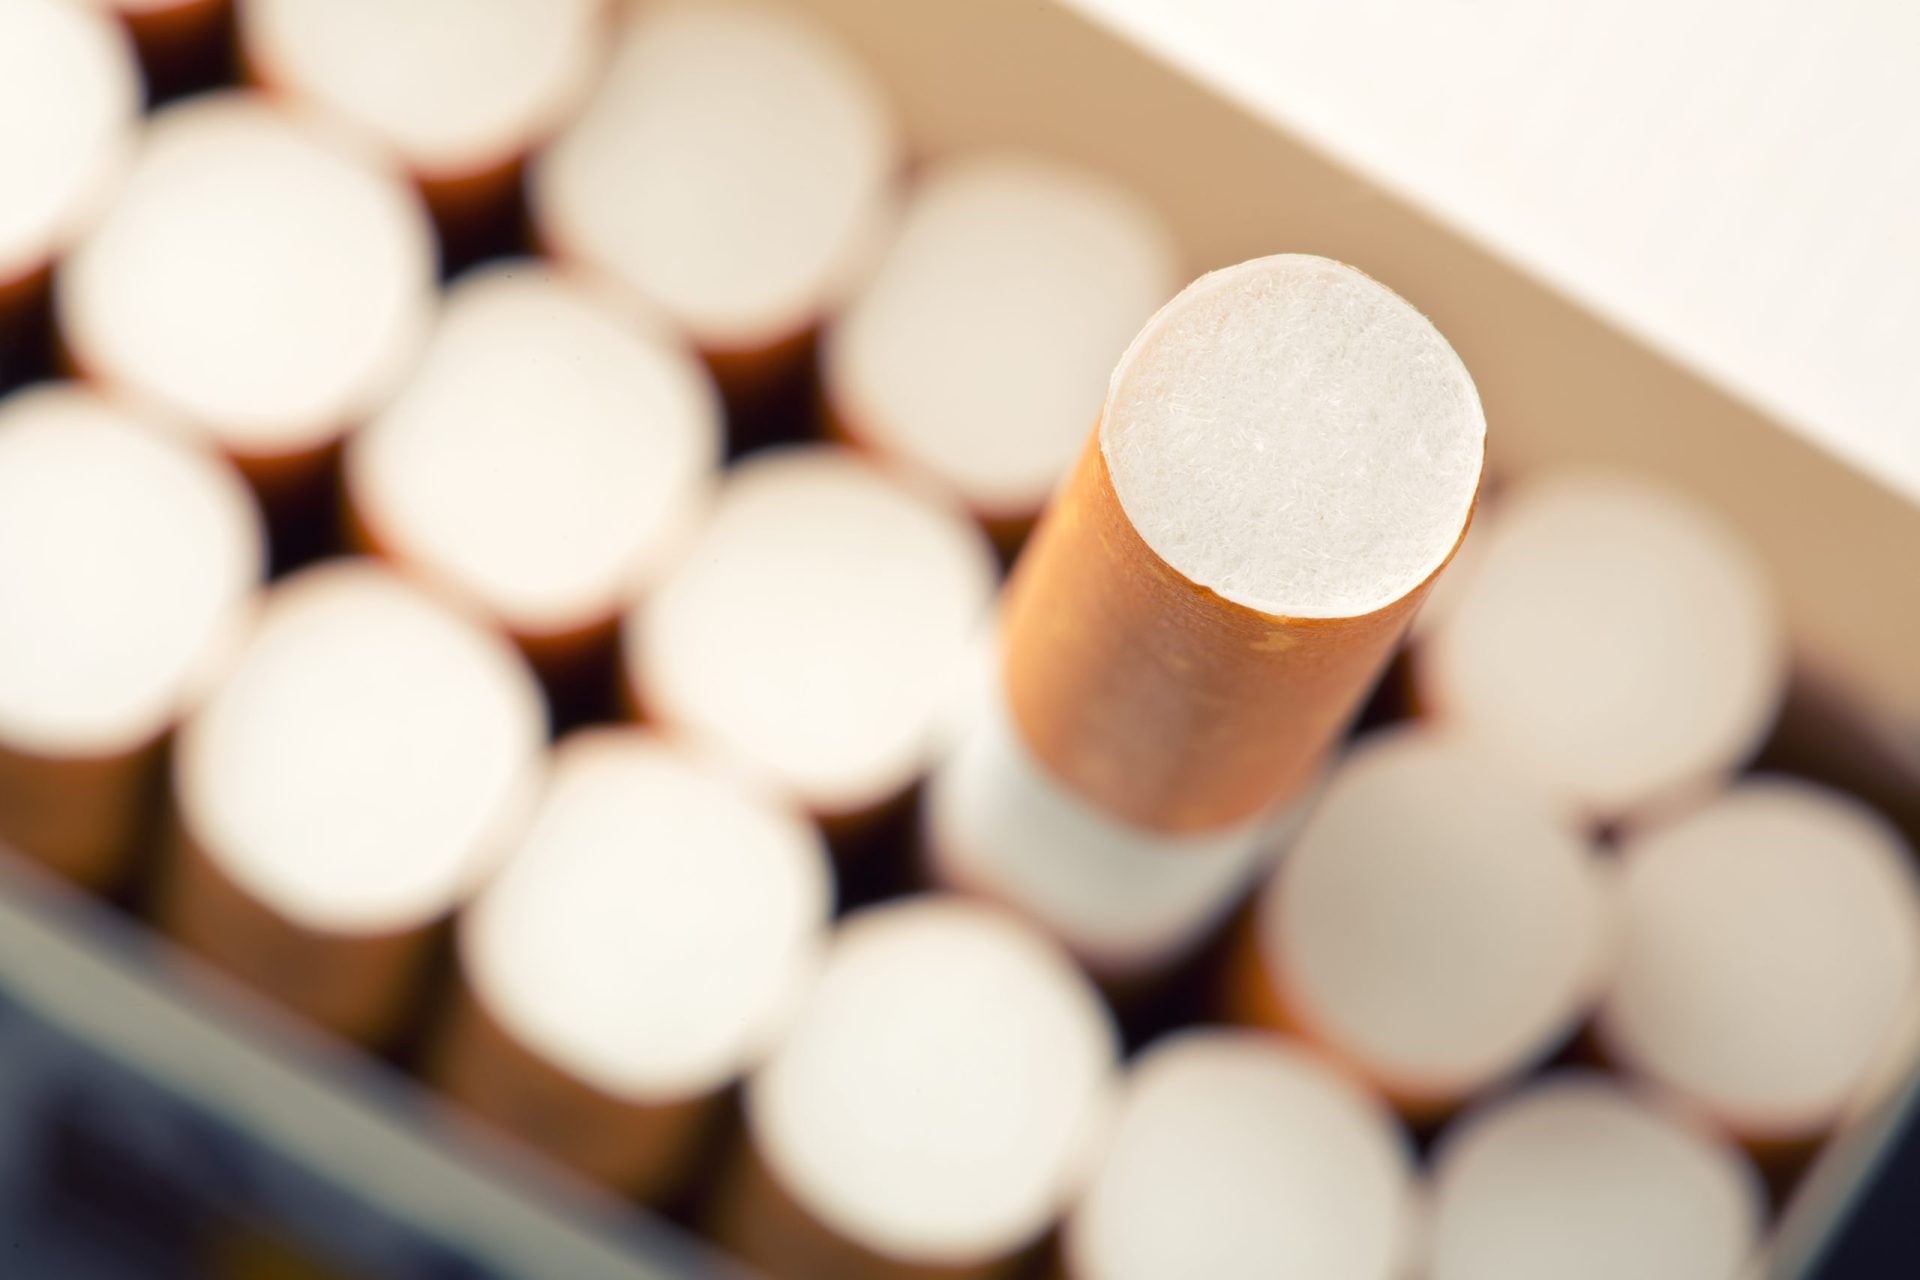 Sabe quanto custa um maço de tabaco na Austrália?